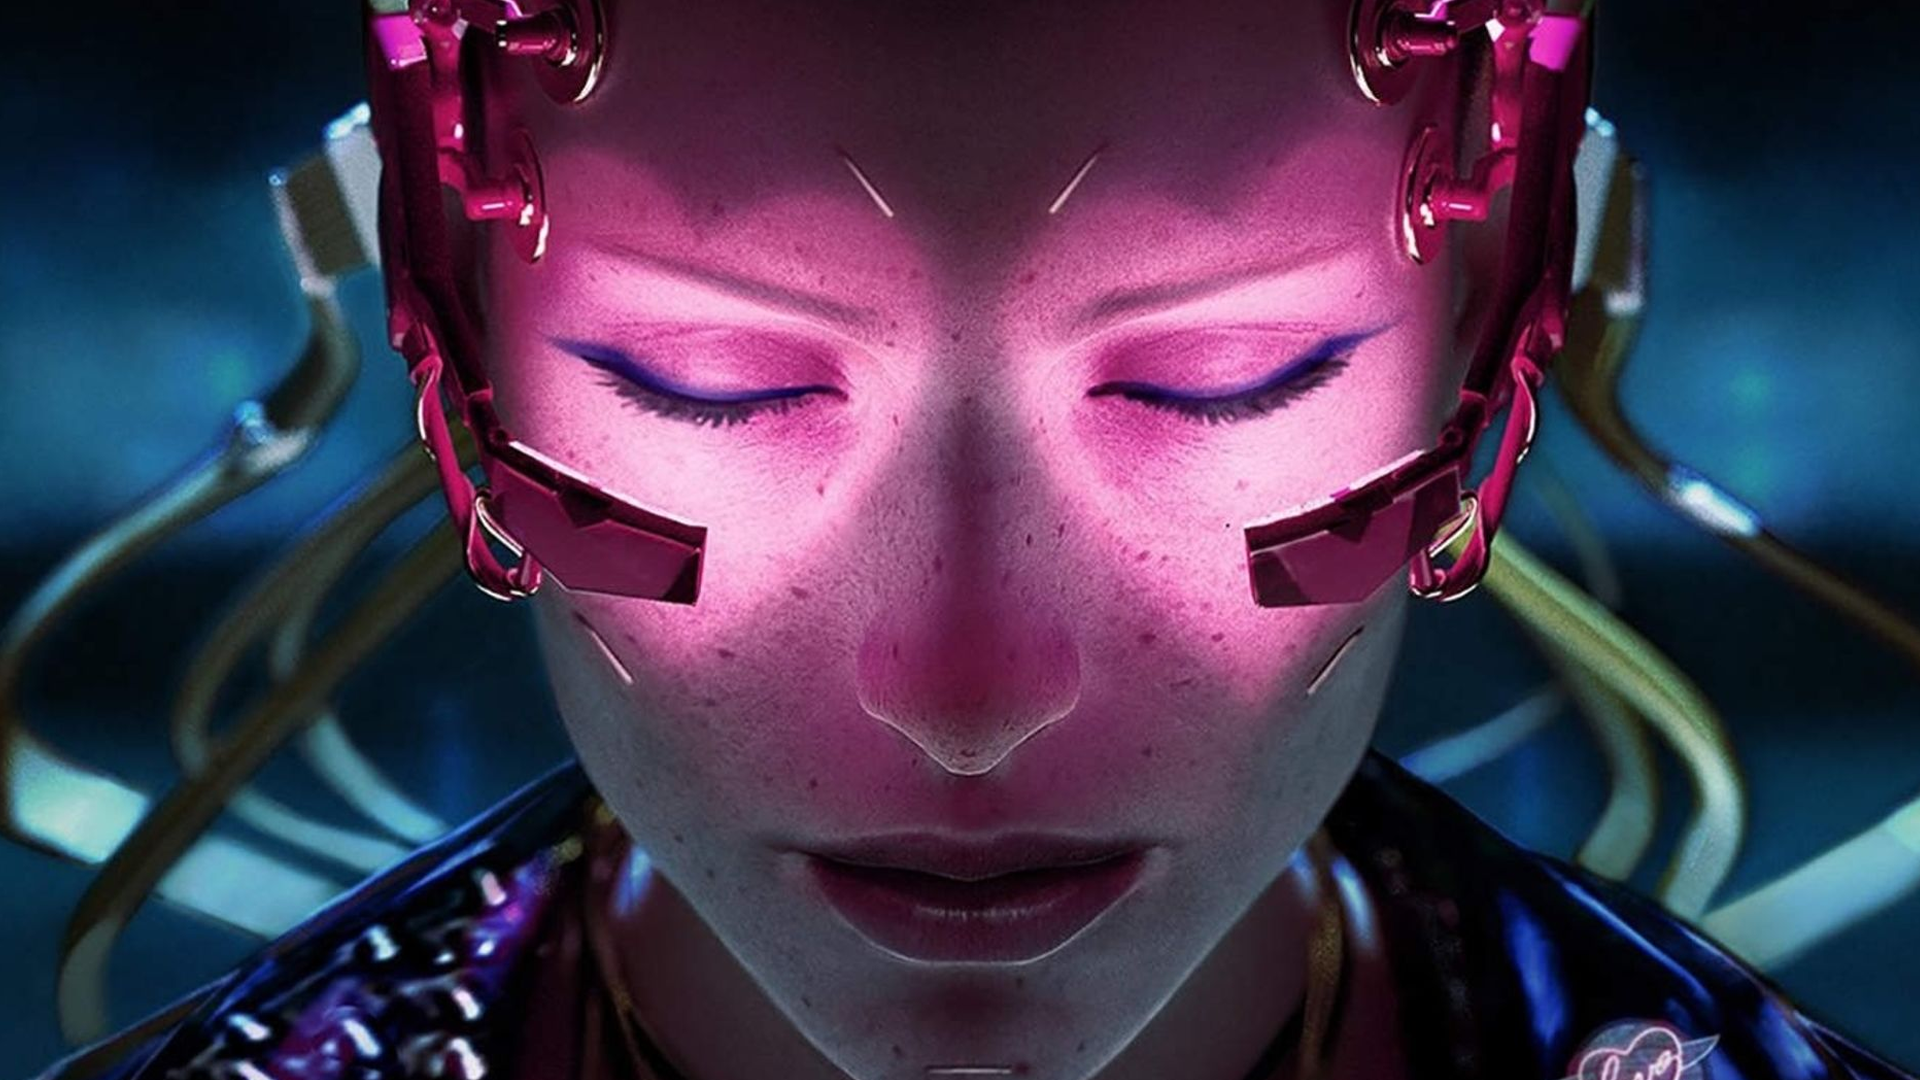 Demain tous cyberpunks ? L'augmentation humaine robotique est toute proche selon les scientifiques